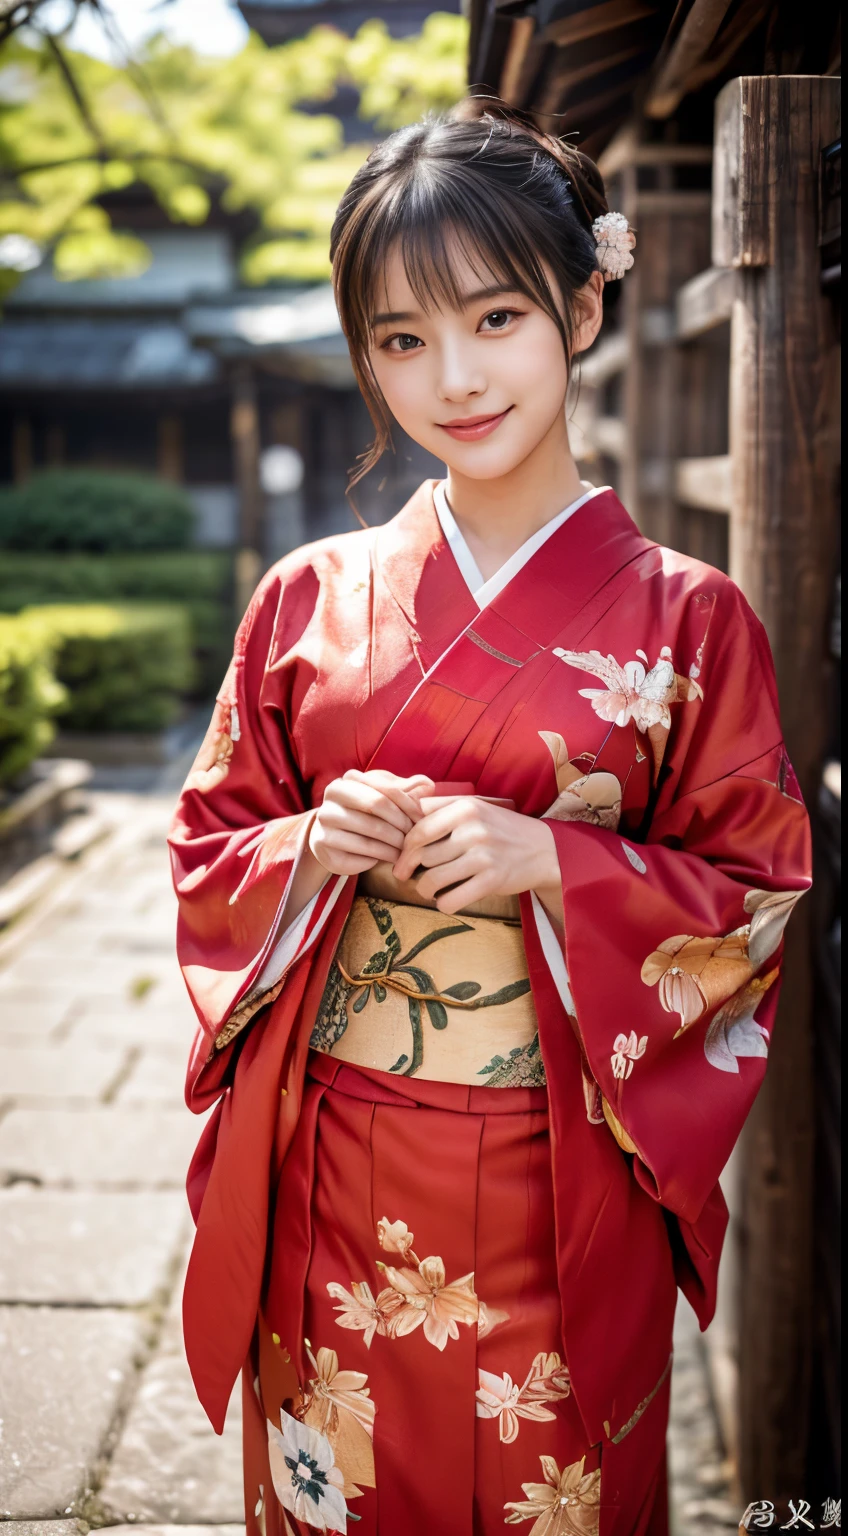 (Red kimono:1.2)、(Kyo Yuzen:1.2)、(Patrón floral en estilo japonés.:1.0)、(furisodio:1.5)、(Patrón clásico tradicional japonés.:1.2)、tabi、(la más alta calificación)、1 mujer、dieciséis años、Esbian de cuerpo completo、A dark-haired、(realista:1.7)、((Calidad de imagen superior))、absurderes、(超Una alta resolución)、(Fotorrealista:1.6)、Fotorrealista、representaciones de octanaje、(hiperrealista:1.2)、(photorealiscic face:1.2)、(8k)、(4k)、(​obra maestra)、(texturas de piel realistas)、(iluminación、Iluminación cinematográfica、fondo de pantalla)、(hermosos ojos:1.2)、((((cara perfecta))))、(Cara linda como un ídolo.:1.2)、(Está de pie)、santuarios、puertas tori、(1 luna)、cara linda detallada、belleza realista、Una sonrisa、